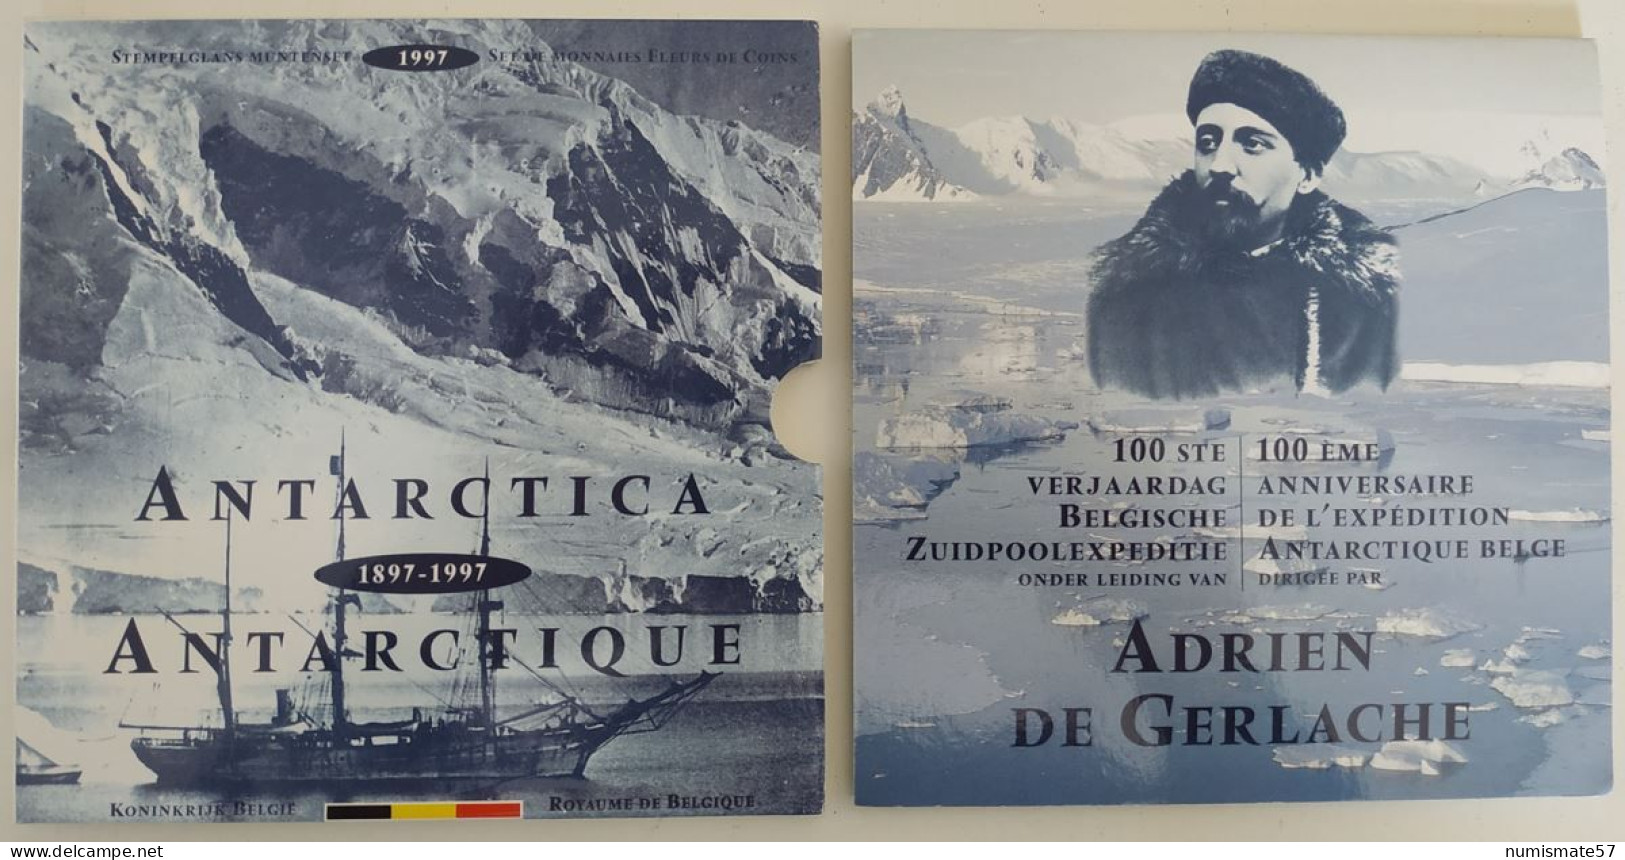 Coffret FDC BELGIQUE - Antartique - Antartica - 1997- 100ème Anniversaire De L'Expédition Belge - Adrien De Gerlache - FDEC, BU, BE & Münzkassetten